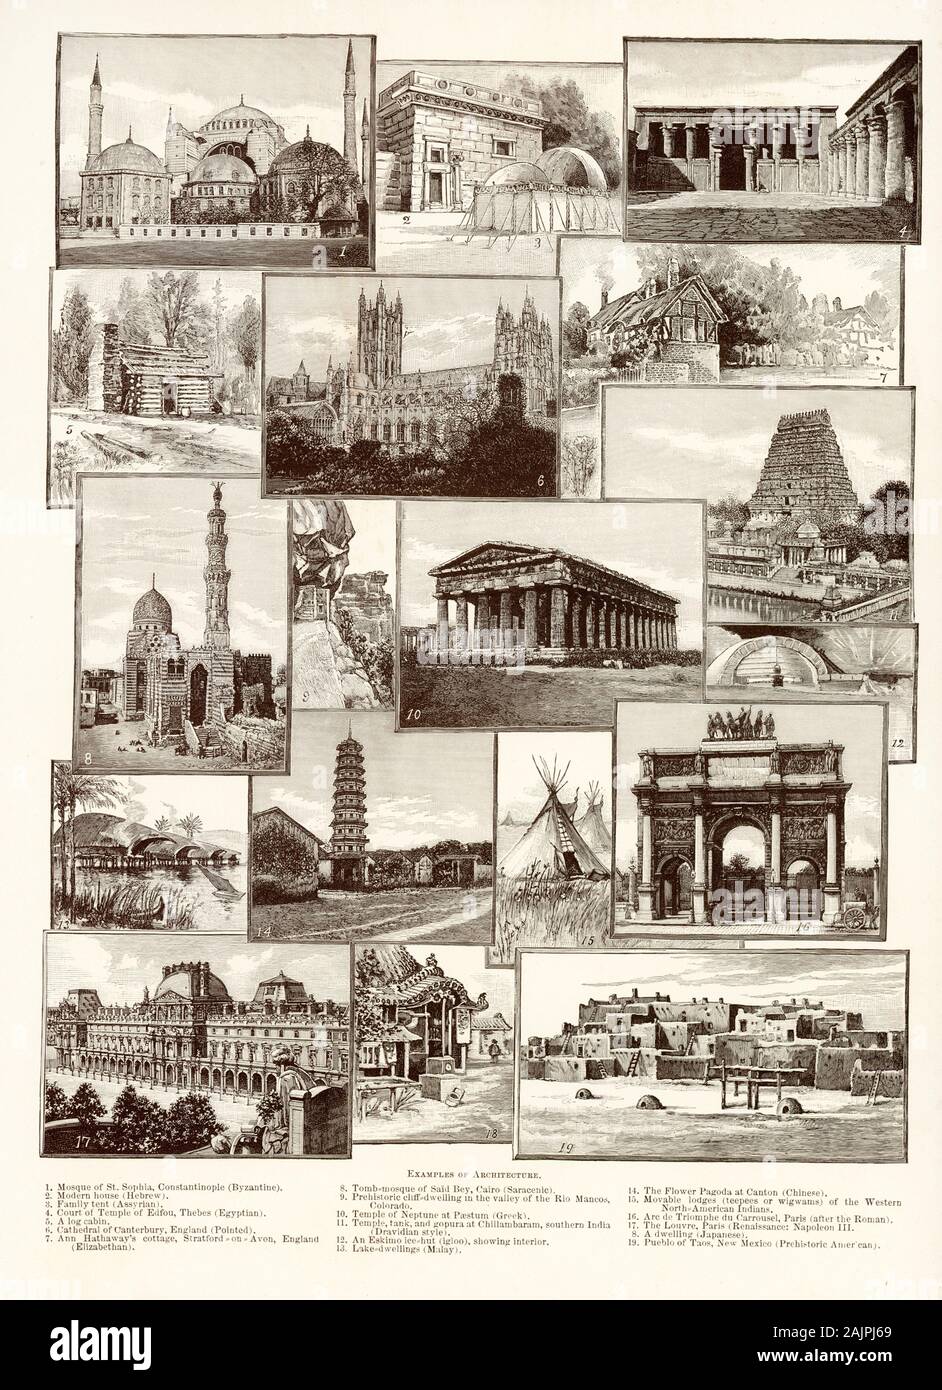 Esempi di architettura (1900): 1. La moschea di Santa Sofia, Costantinopoli (Bizantina); 2. casa moderna (ebraico); 3. La famiglia tenda (l'assiro); 4. Tribunale di Tempio di Edfou, Tebe (egiziano); 5. un log cabin; 6. La cattedrale di Canterbury, Inghilterra (sottolineato); 7. Anne Hathaway's Cottage, Stratford-su-Avon, Inghilterra (Elizabethan); 8. Tomba-moschea di detto Bey, Il Cairo (Saracenic); 9. Scogliera preistorico-dimora nella valle del Rio Mancos, Colorado; 10. Tempio di Nettuno a Paestum (Greco); 11. Tempio, del serbatoio e del gopura a Chillambaram, India meridionale (stile dravidico); 12. un eschimese ice-rifugio (igloo), che mostra inter Foto Stock